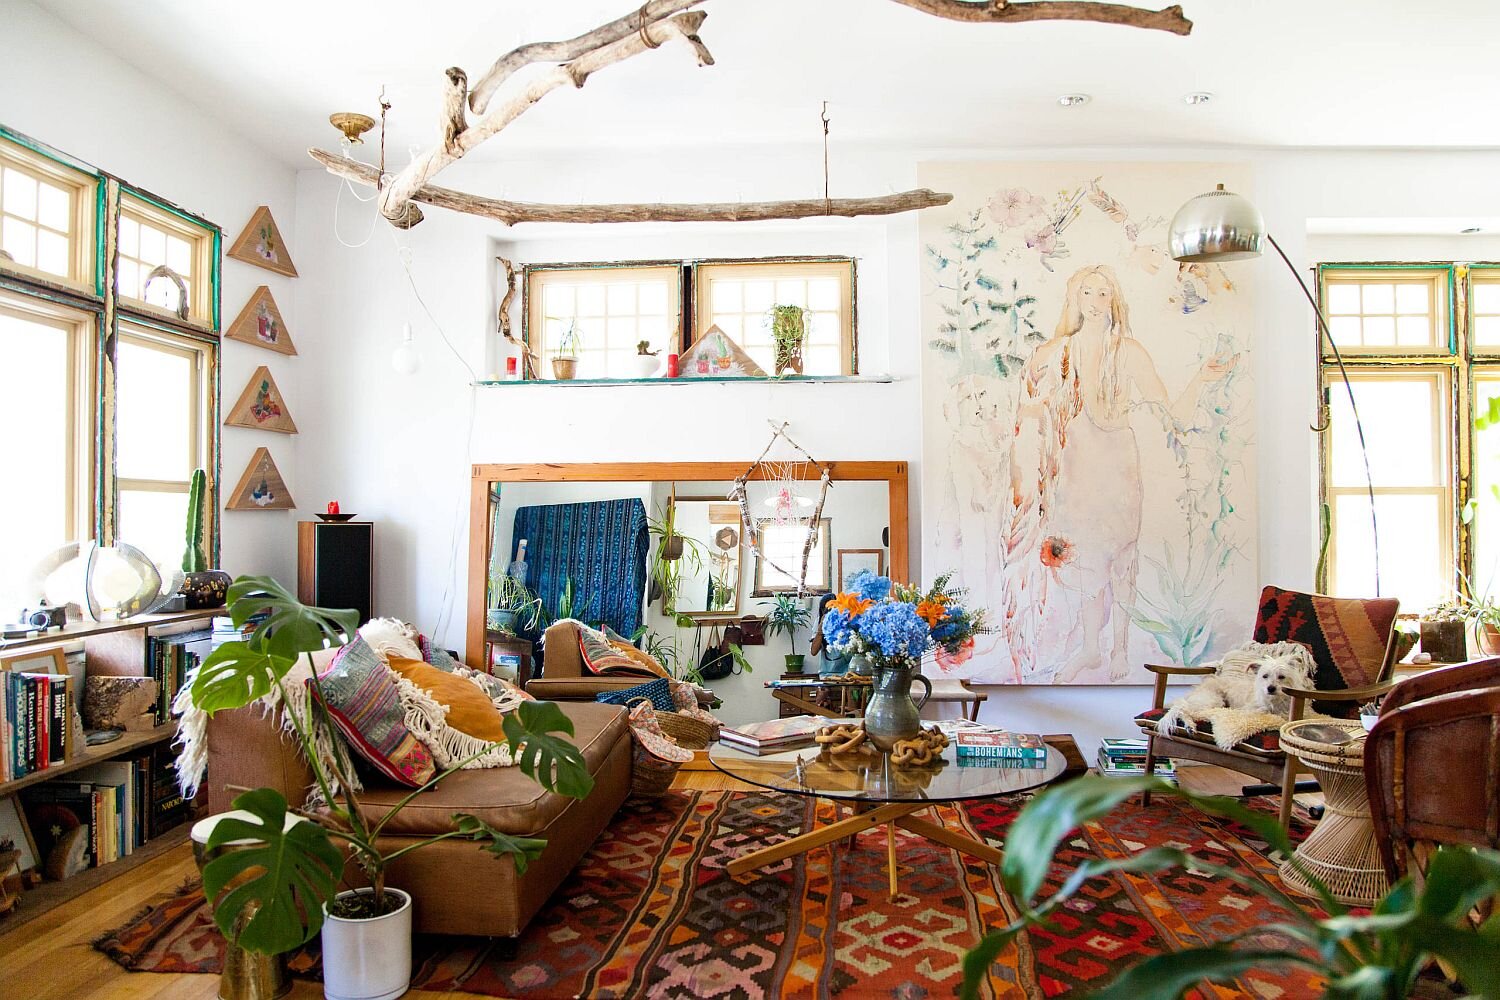 Boho Home Decor: 10 Genius Interior Design Tips for a Boho-licious